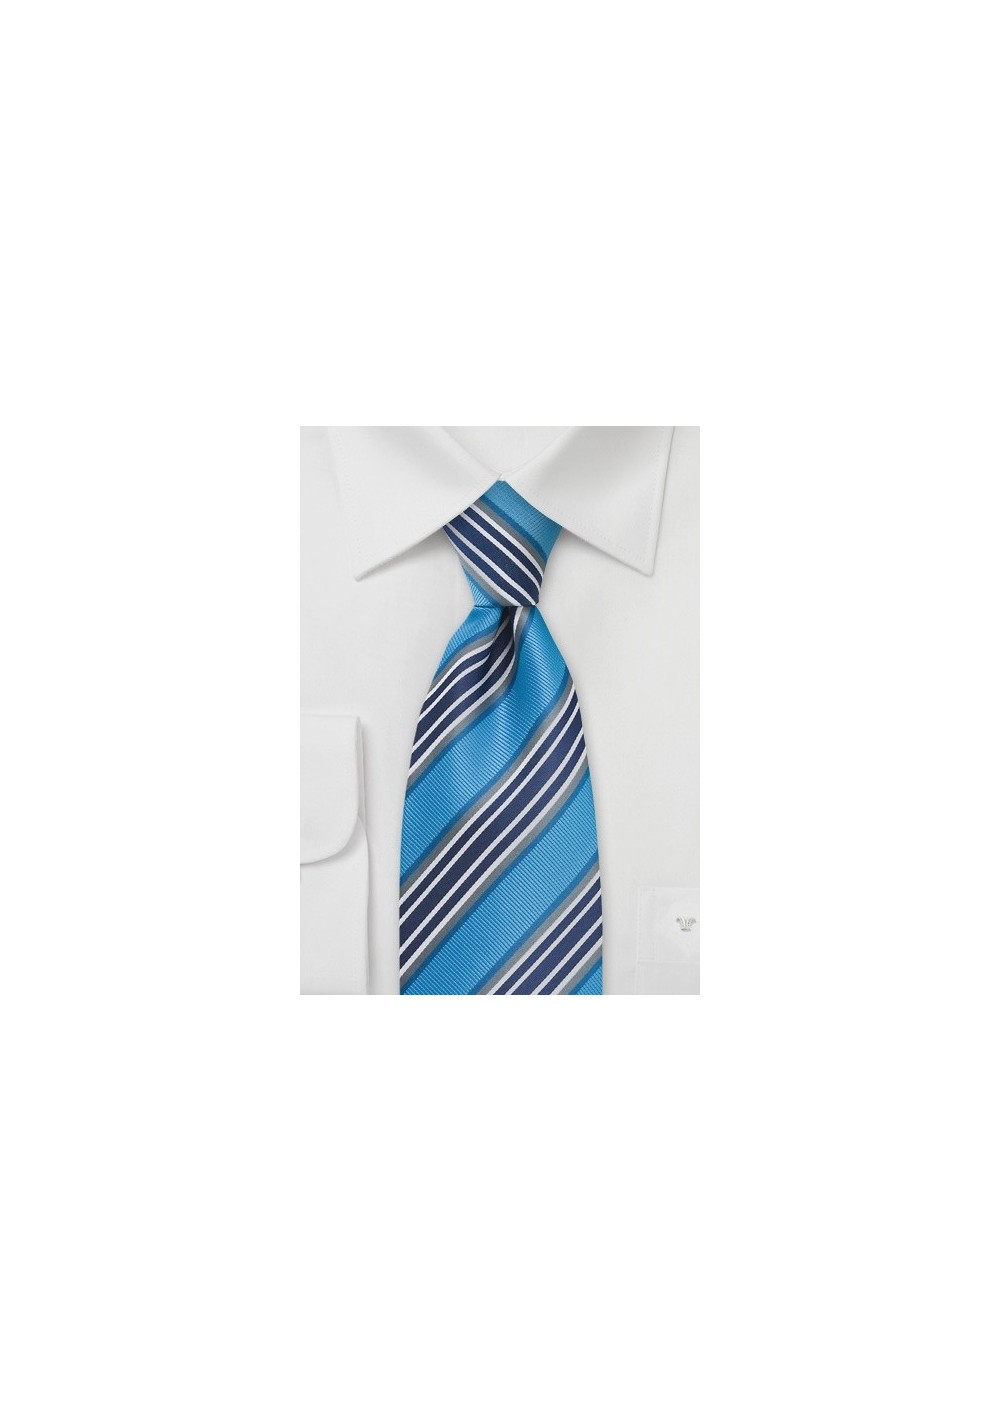 Matisse Blue Striped Tie